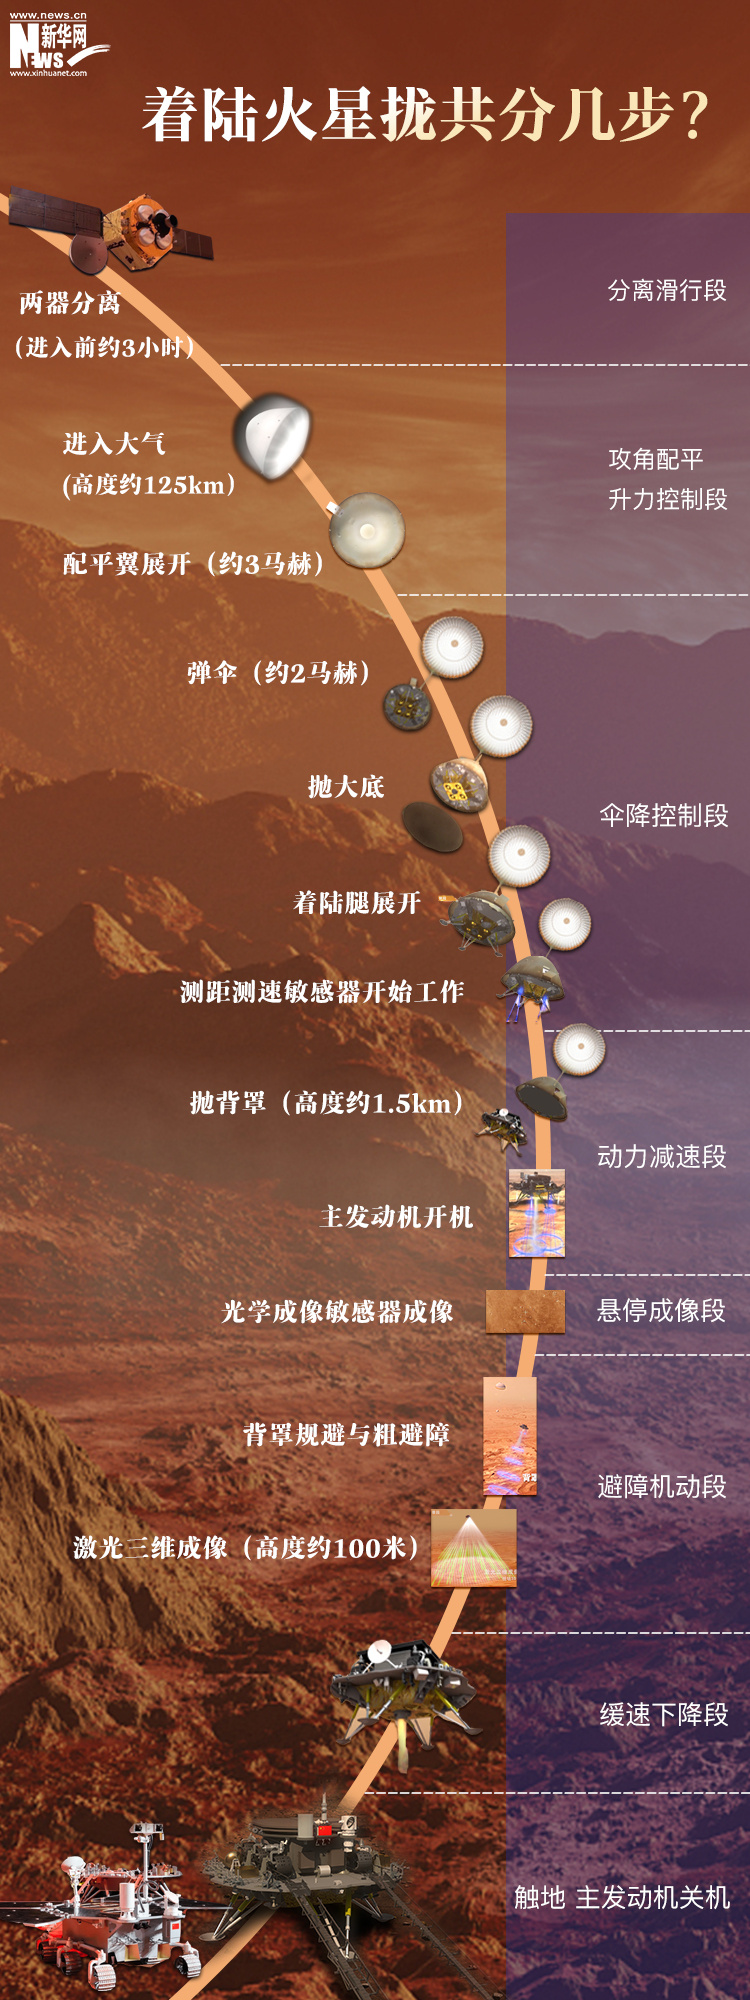 【海报】六图看懂中国火星探测器安抵火星